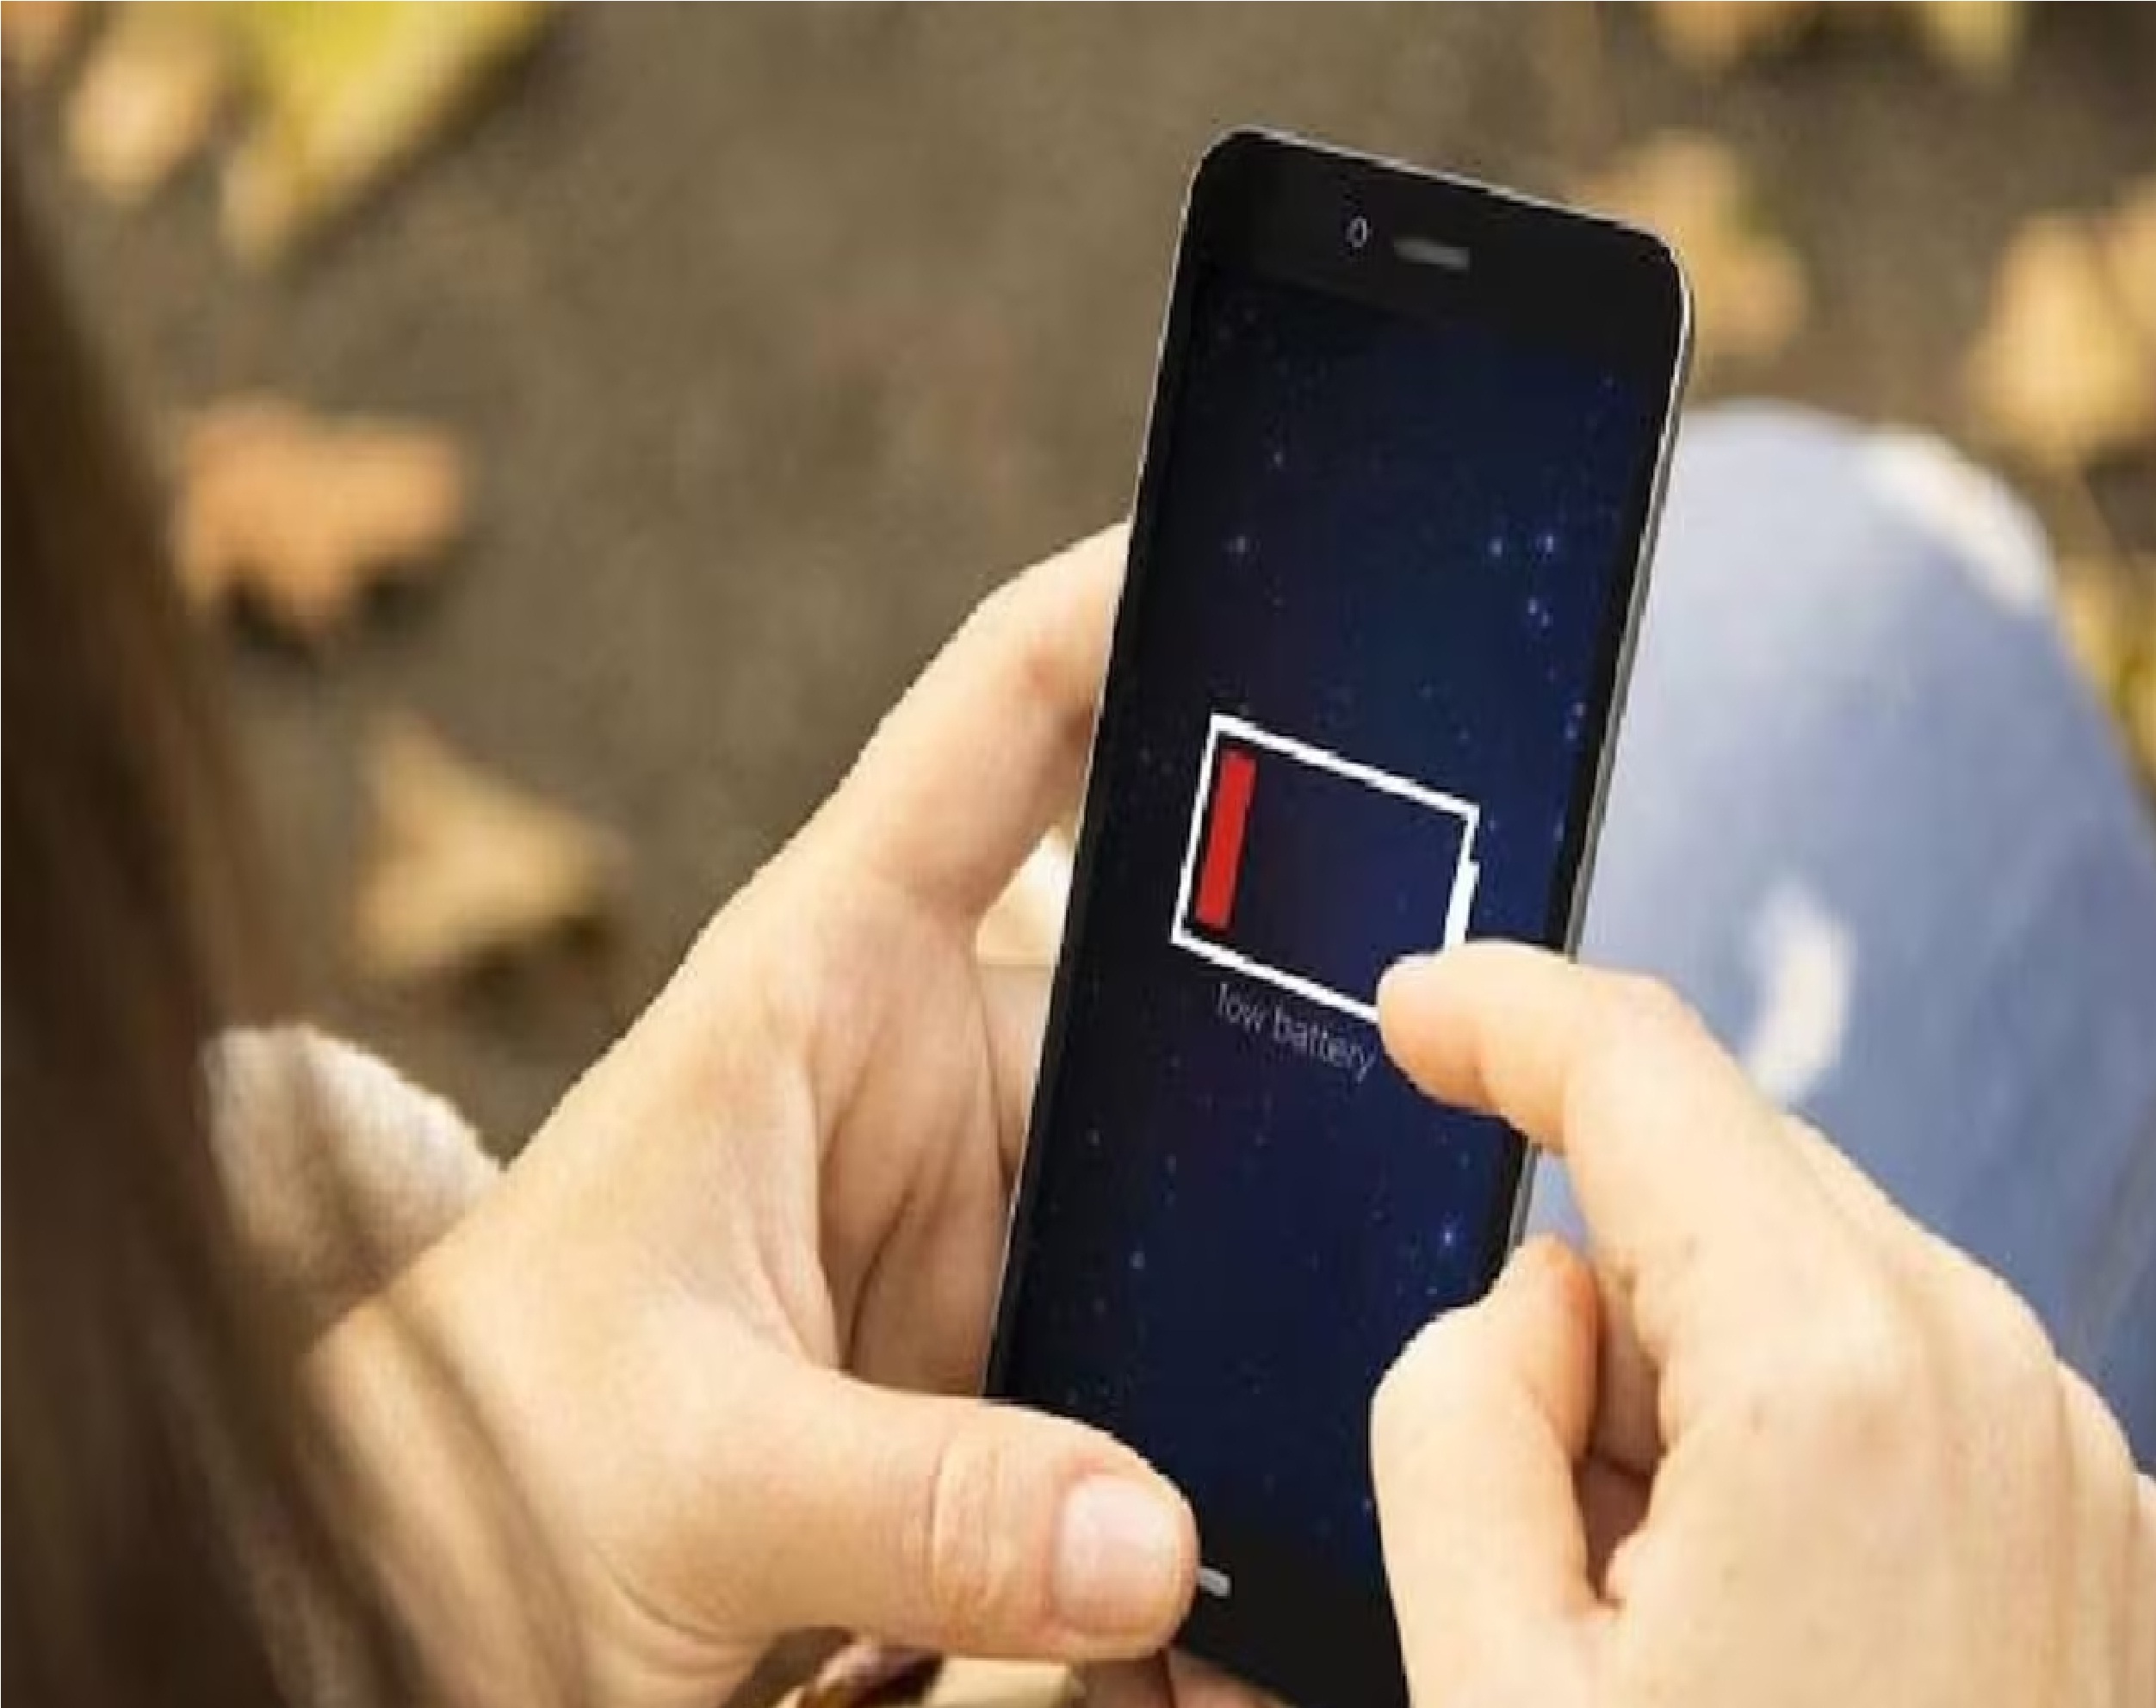 New Delhi: इन गलती के चक्कर में जल्दी खत्म होती है iPhone बैटरी, जान लिया सीक्रेट तरीका तो दिनभर बंद नहीं होगा फोन